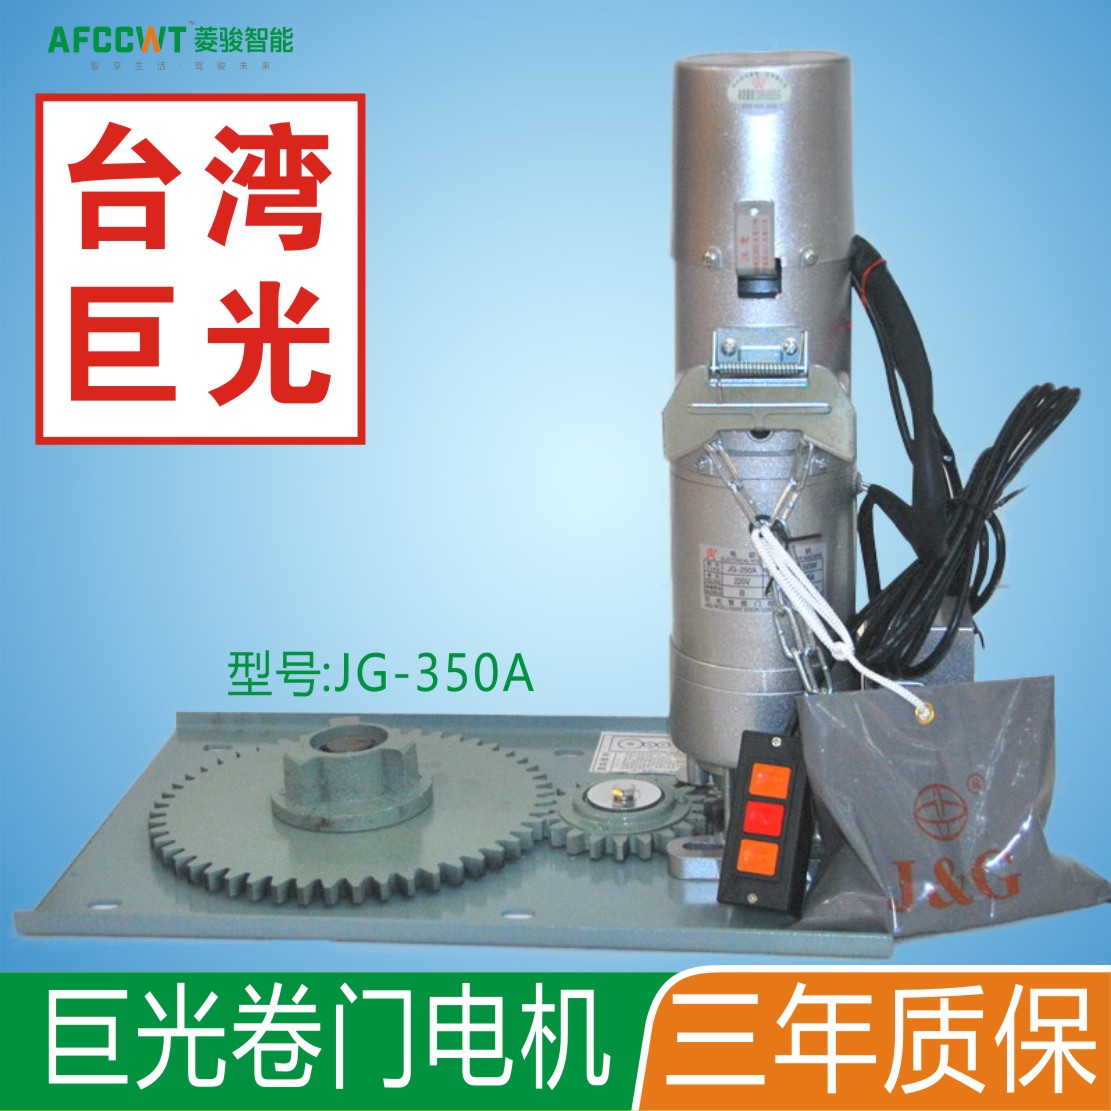 台湾巨光品牌JG-350A齿轮卷闸电机 卷帘门电机 电动卷闸门 遥控器